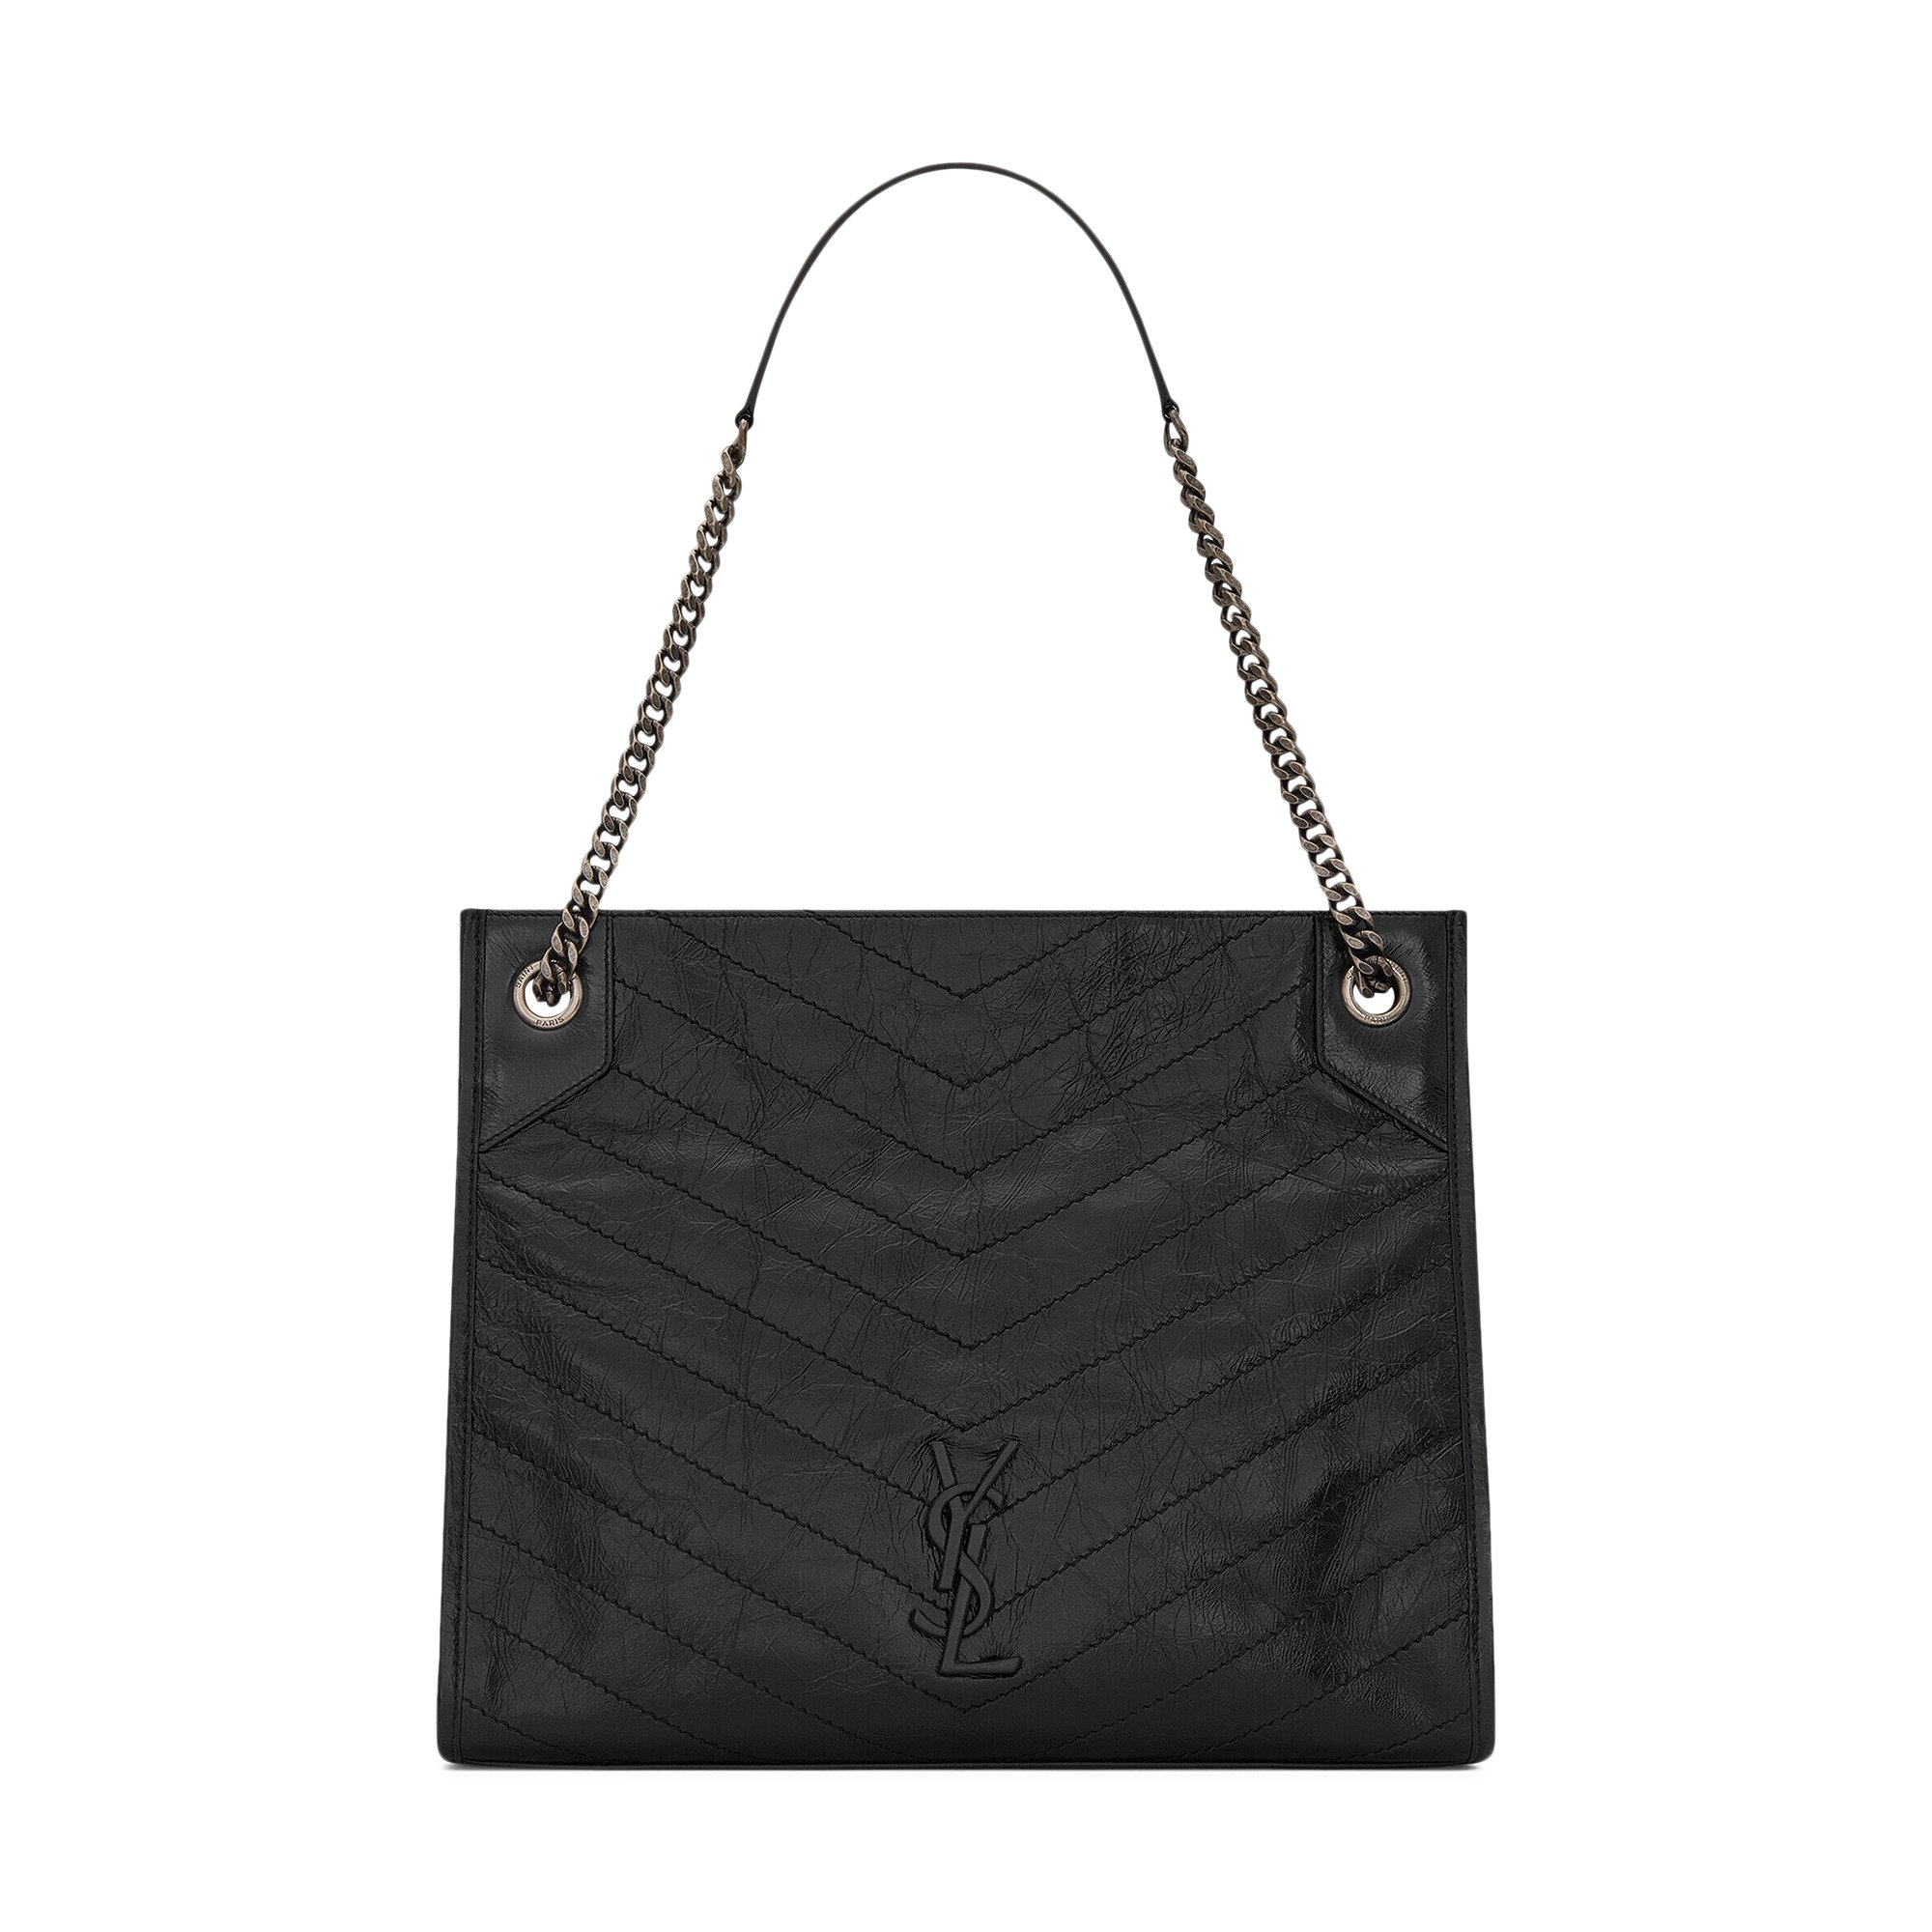 Buy Saint Laurent Niki Shopping Bag 'Black' - 577999 0EN04 1000 